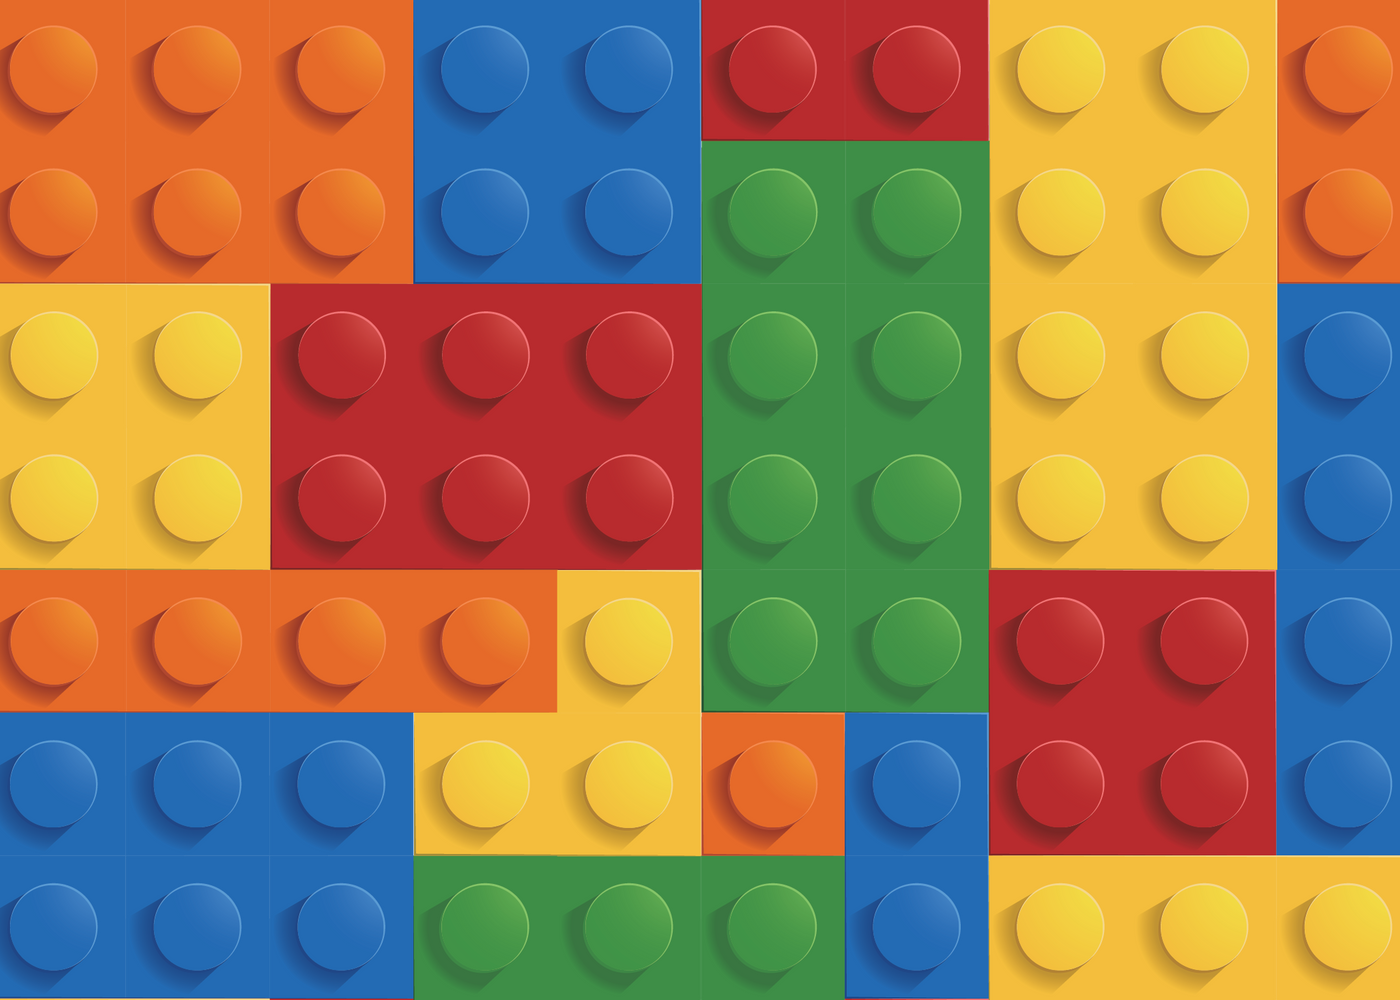 Lego -Big Bash Party Box